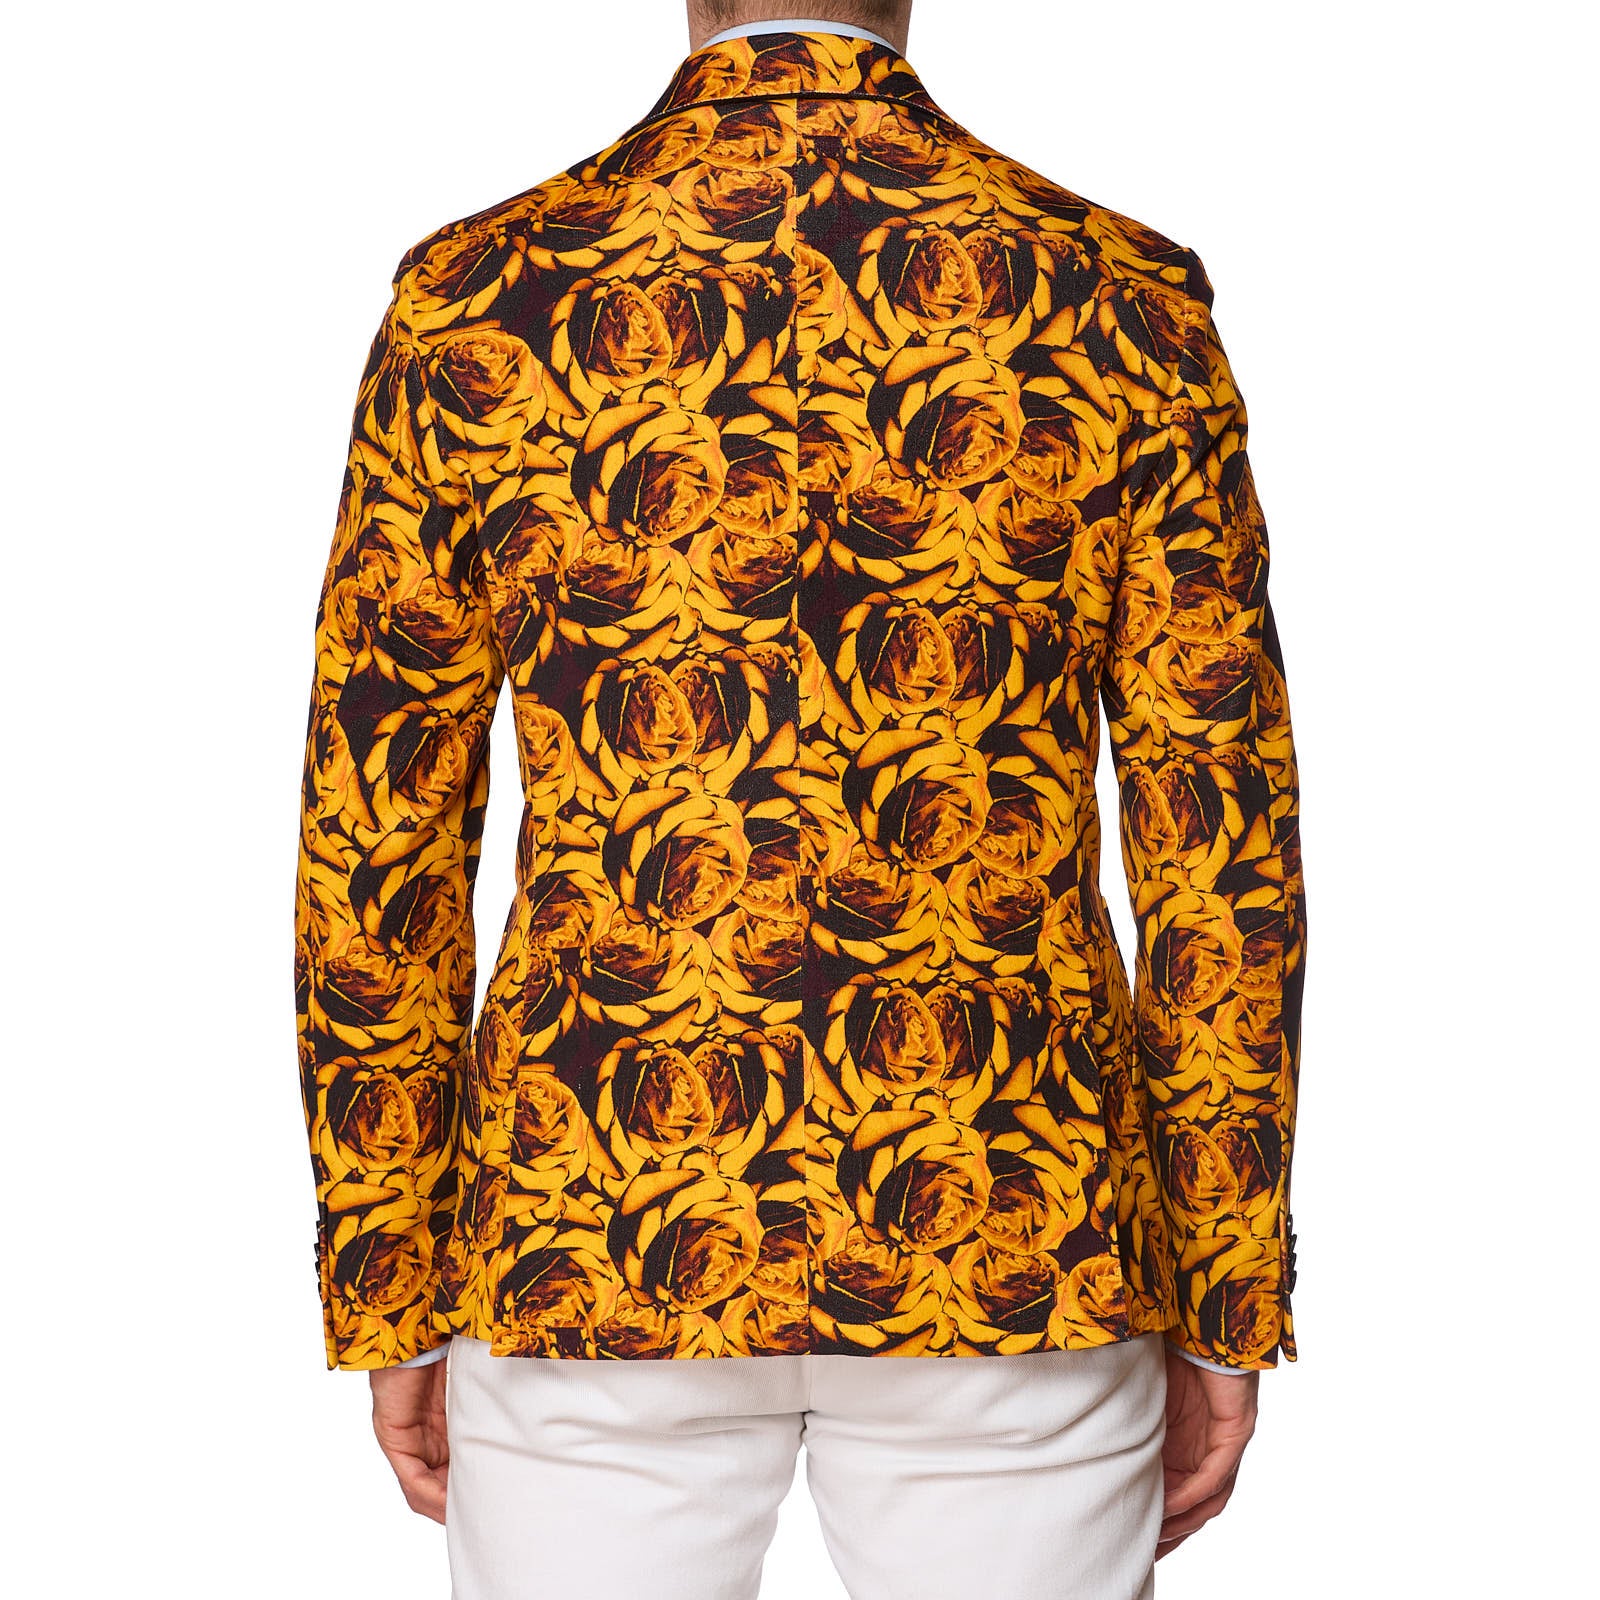 SARTORIA PARTENOPEA Gold Floral Design Jacket EU 50 NEW US 40 Current Model